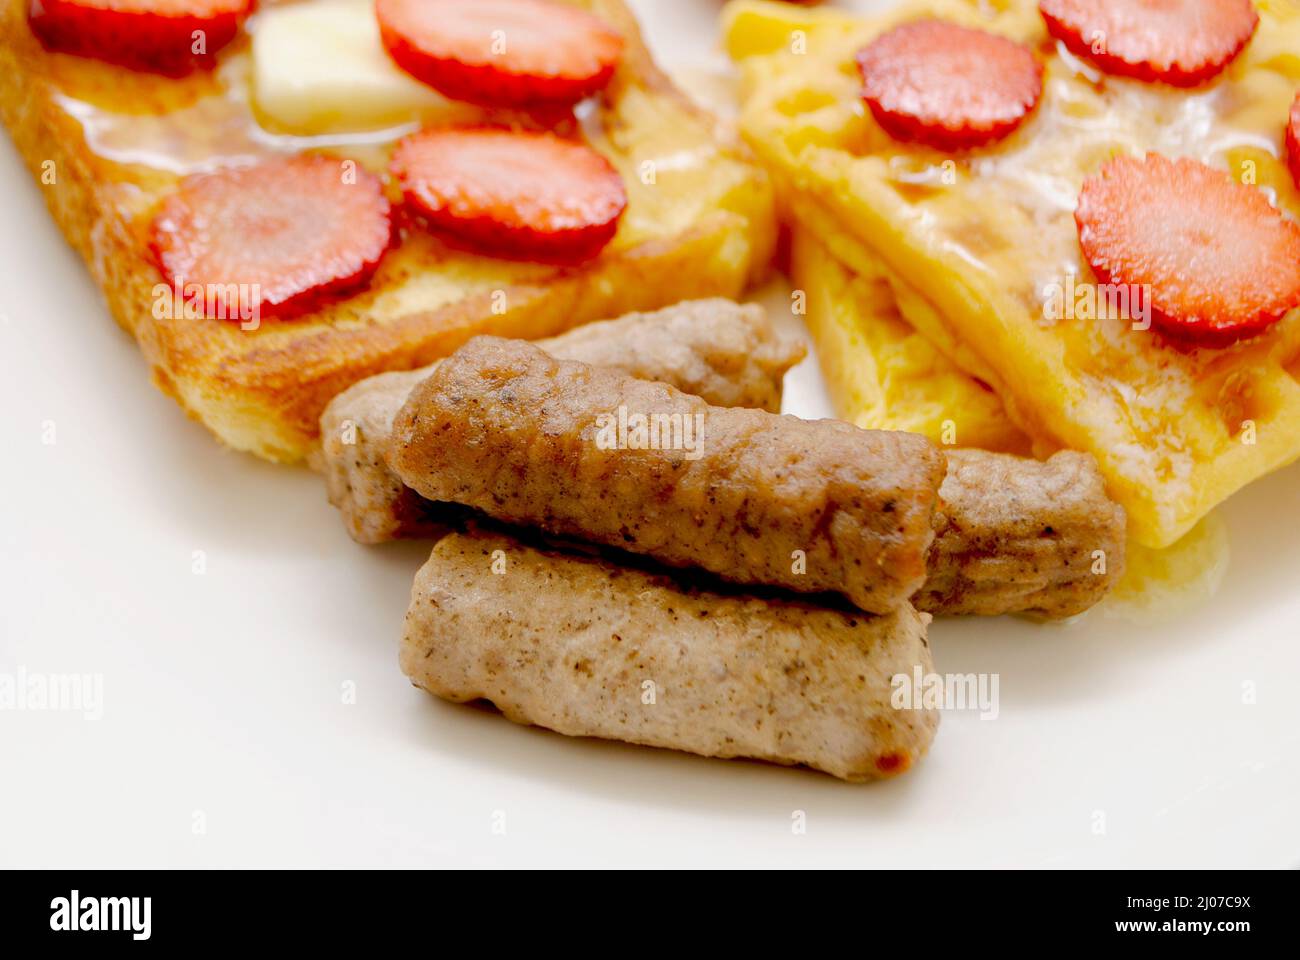 Nahaufnahme von gekochten Frühstückswurst Links, serviert auf einem Teller mit anderen Frühstücksspeisen Stockfoto